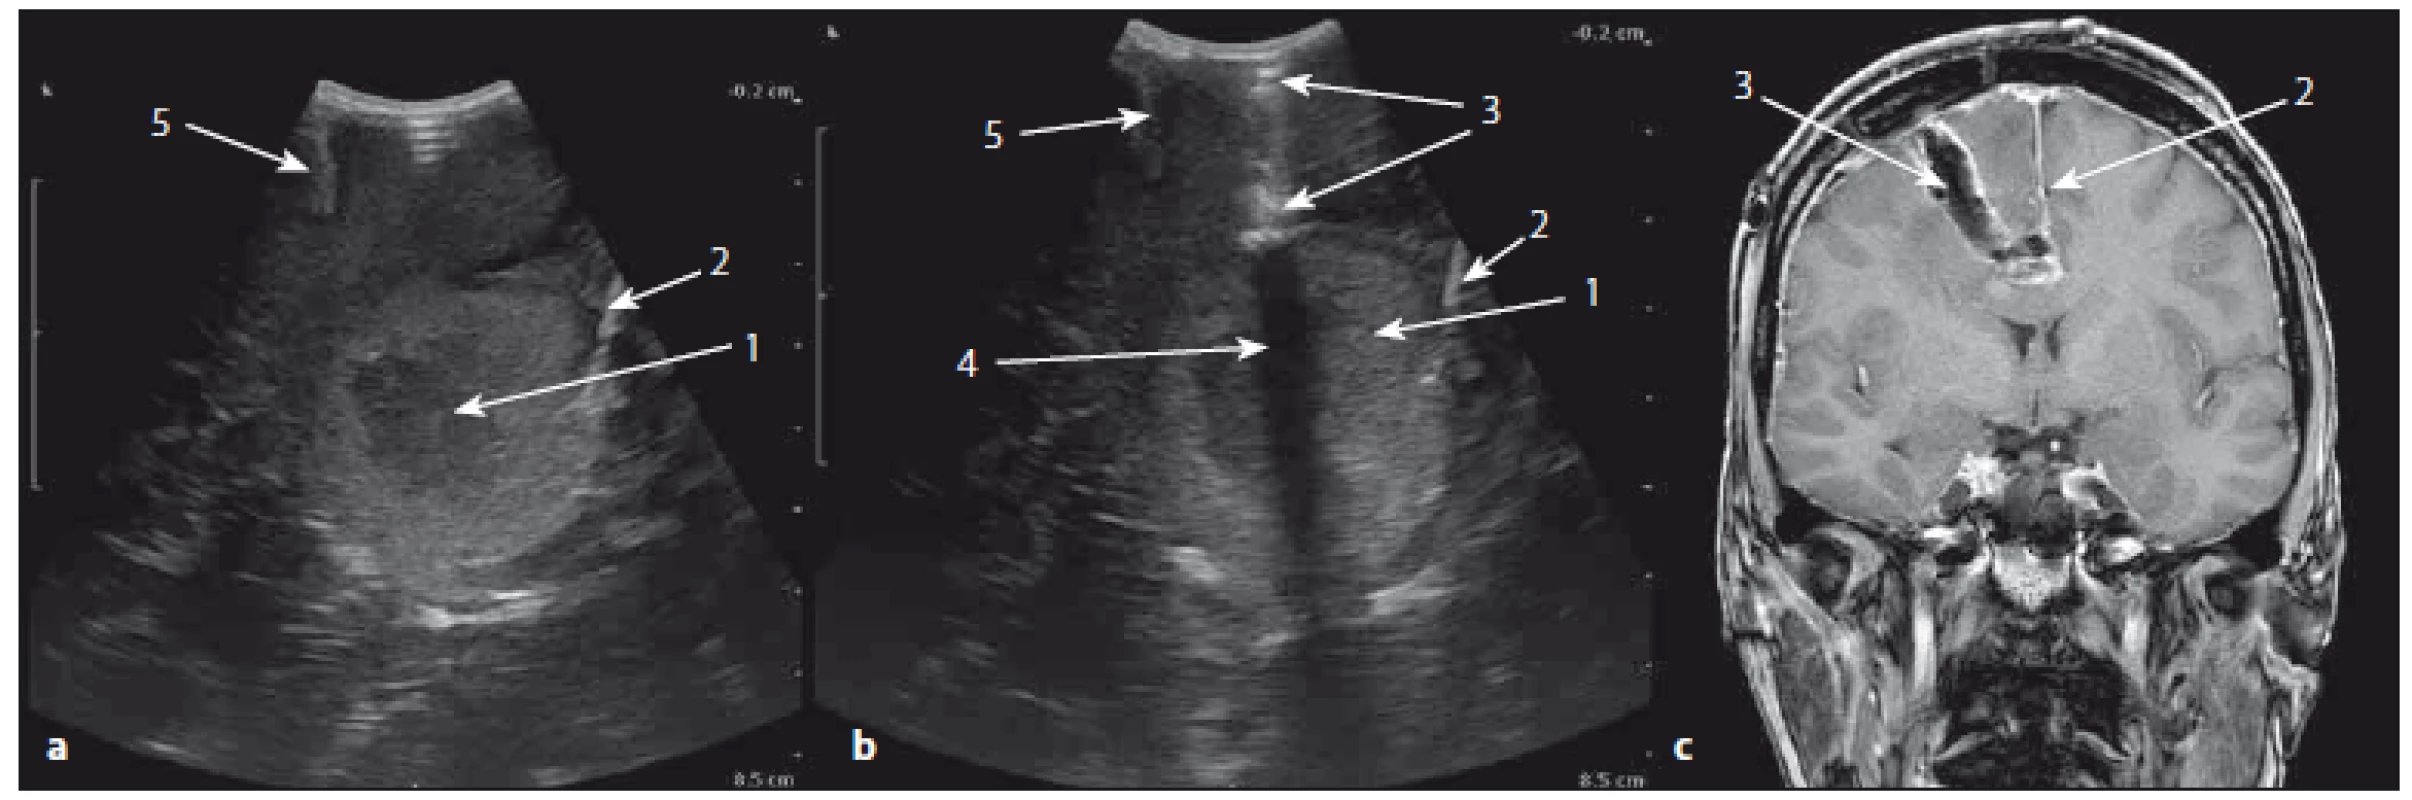 Sonografický peroperační obraz přístupové cesty a korespondující pooperační MR koronární řez v T1W obraze.
Fig. 3. The ultrasound image of the surgical approach and corresponding postoperative MRI T1W image in coronal section.